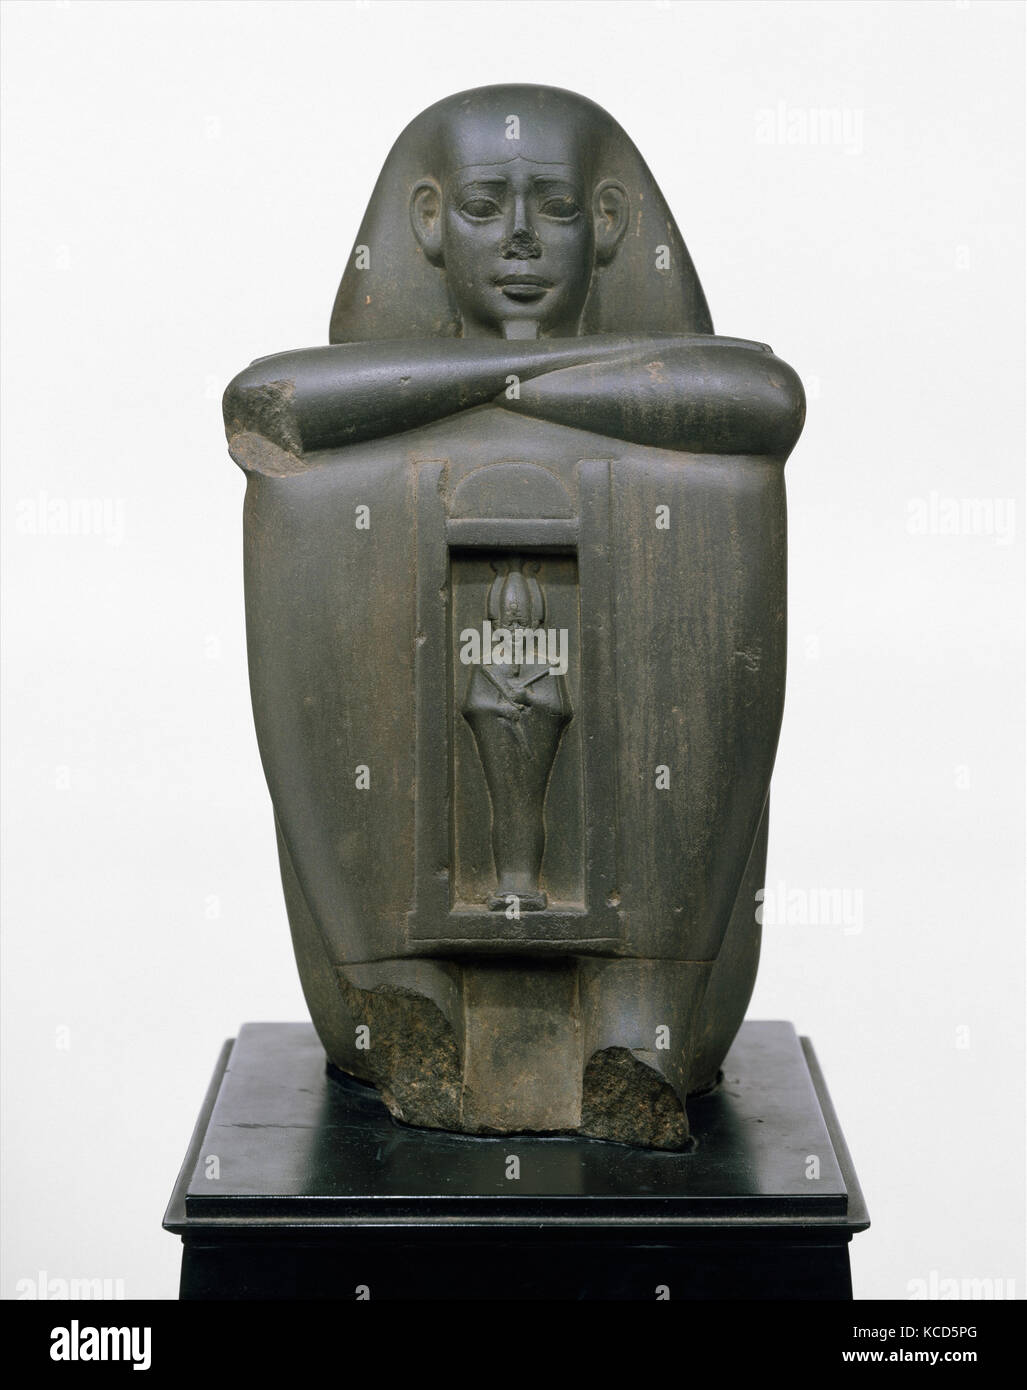 Blocco Naophorous statua di un governatore del Sais, Psamtikseneb, 664-610 A.C. Foto Stock